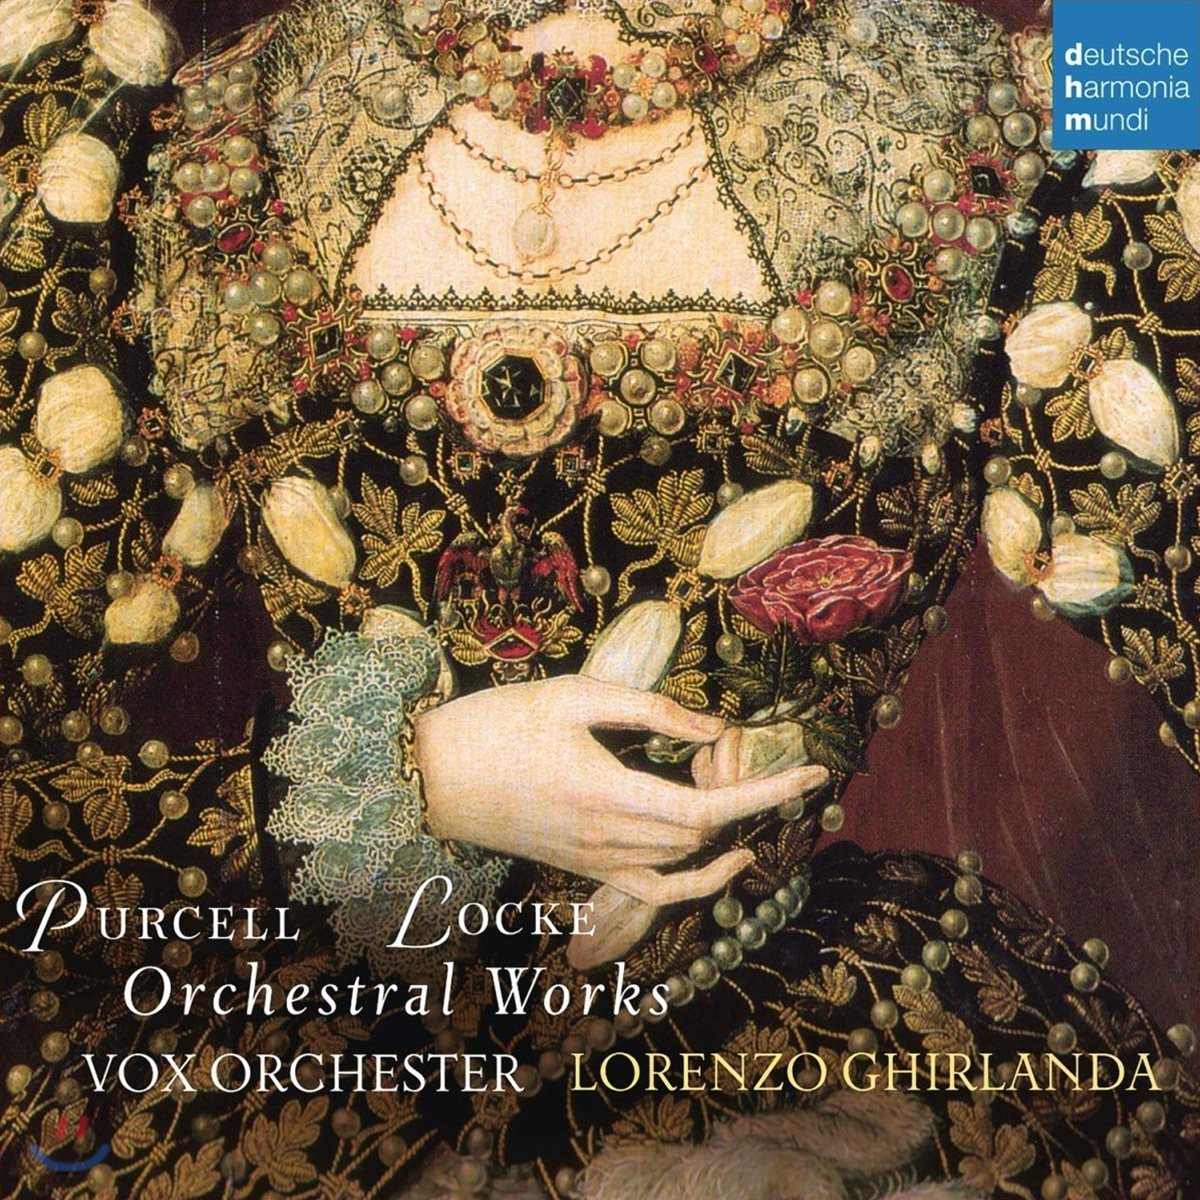 Lorenzo Ghirlanda 퍼셀 / 로크: 관현악 작품집 (Purcell / Locke: Orchestral Works)